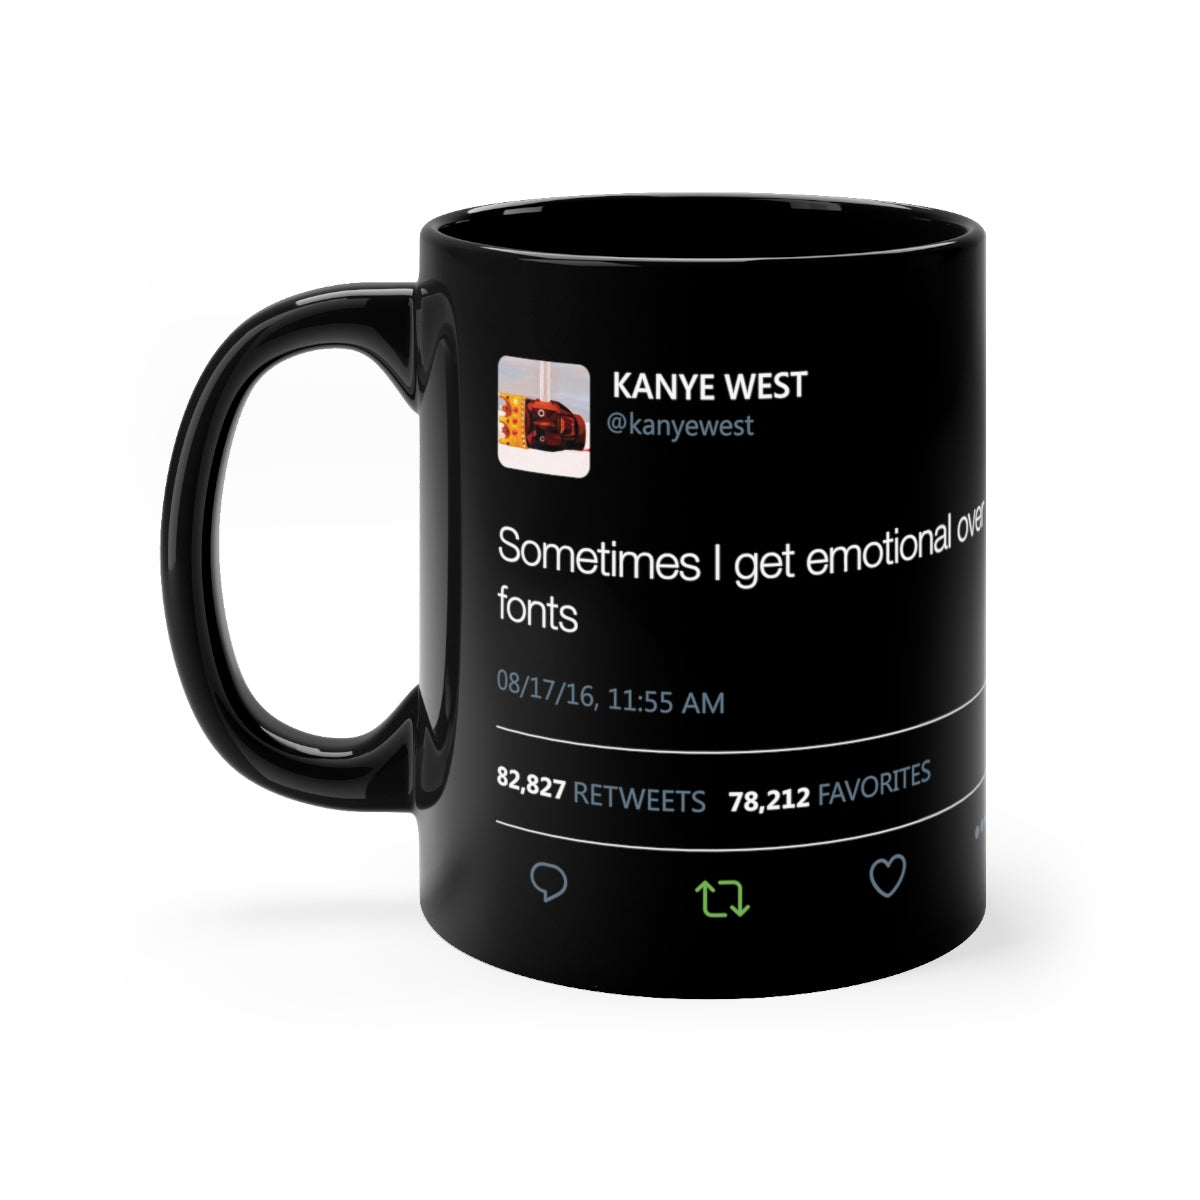 Sometimes I get emotional over fonts Kanye West Tweet Black Mug-11oz-Archethype